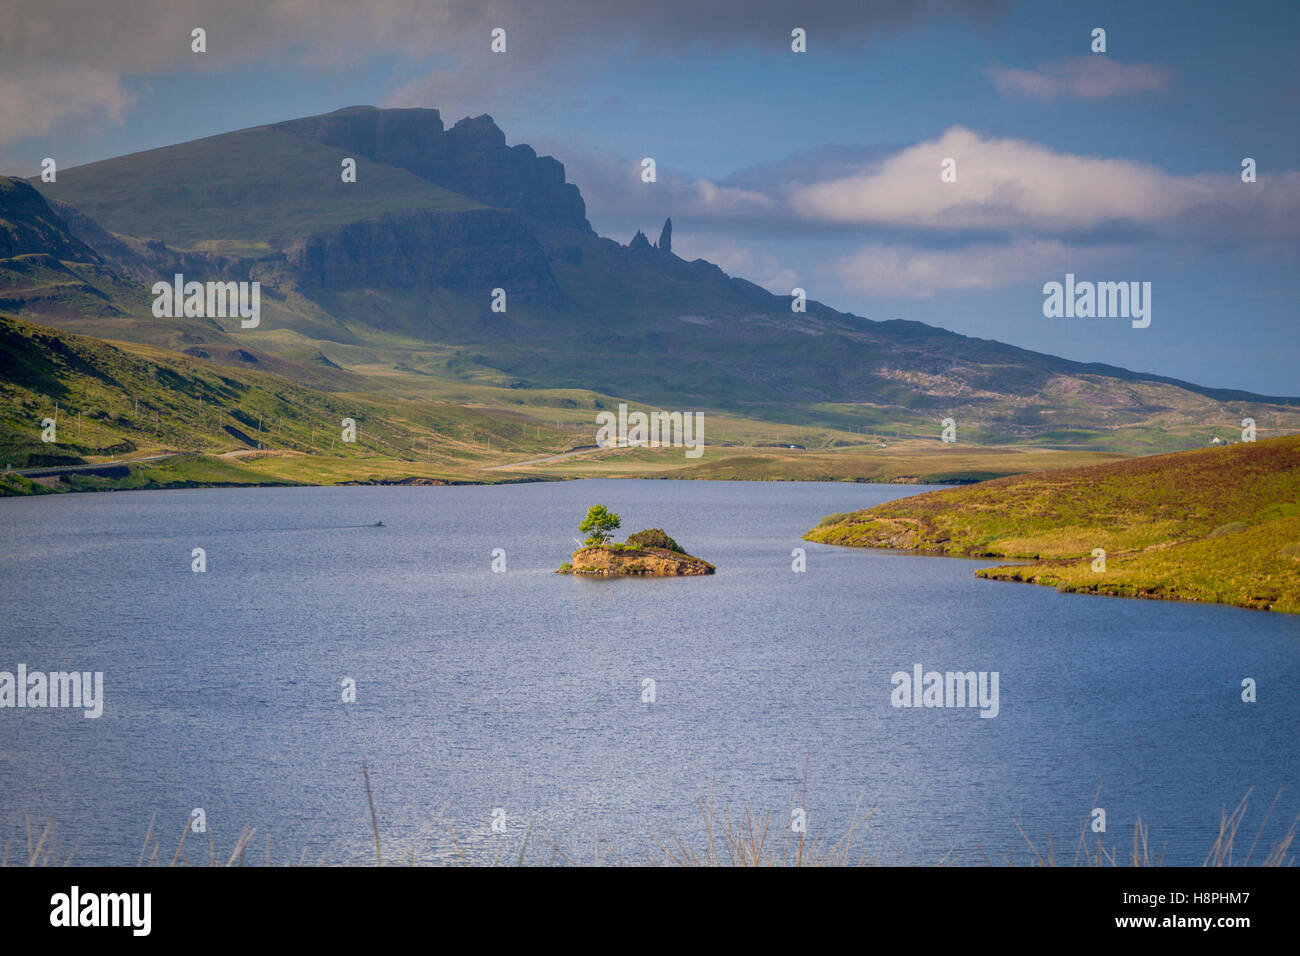 Le vieil homme de Storr et Trotternish à distance, île de Skye, Écosse Banque D'Images